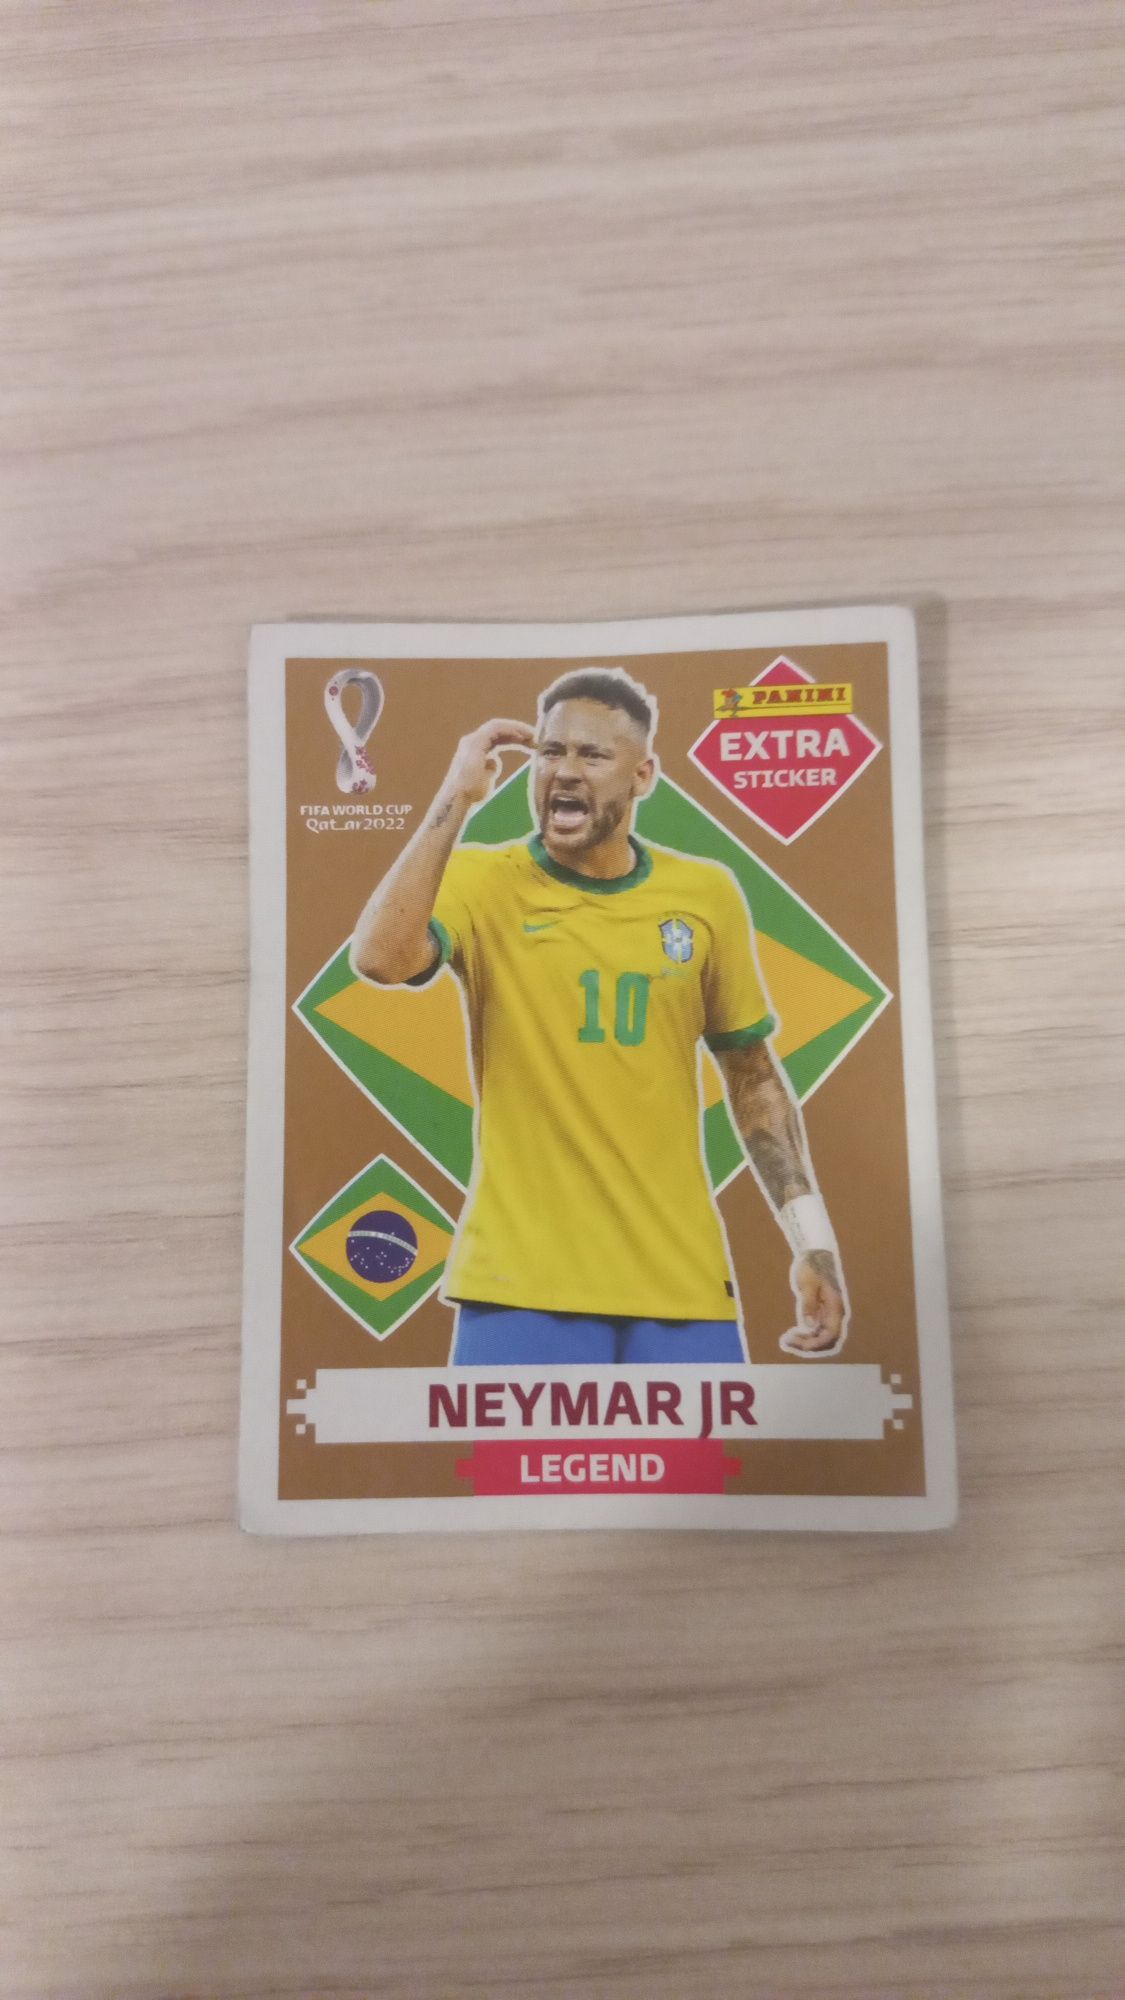 Neymar legend bronze